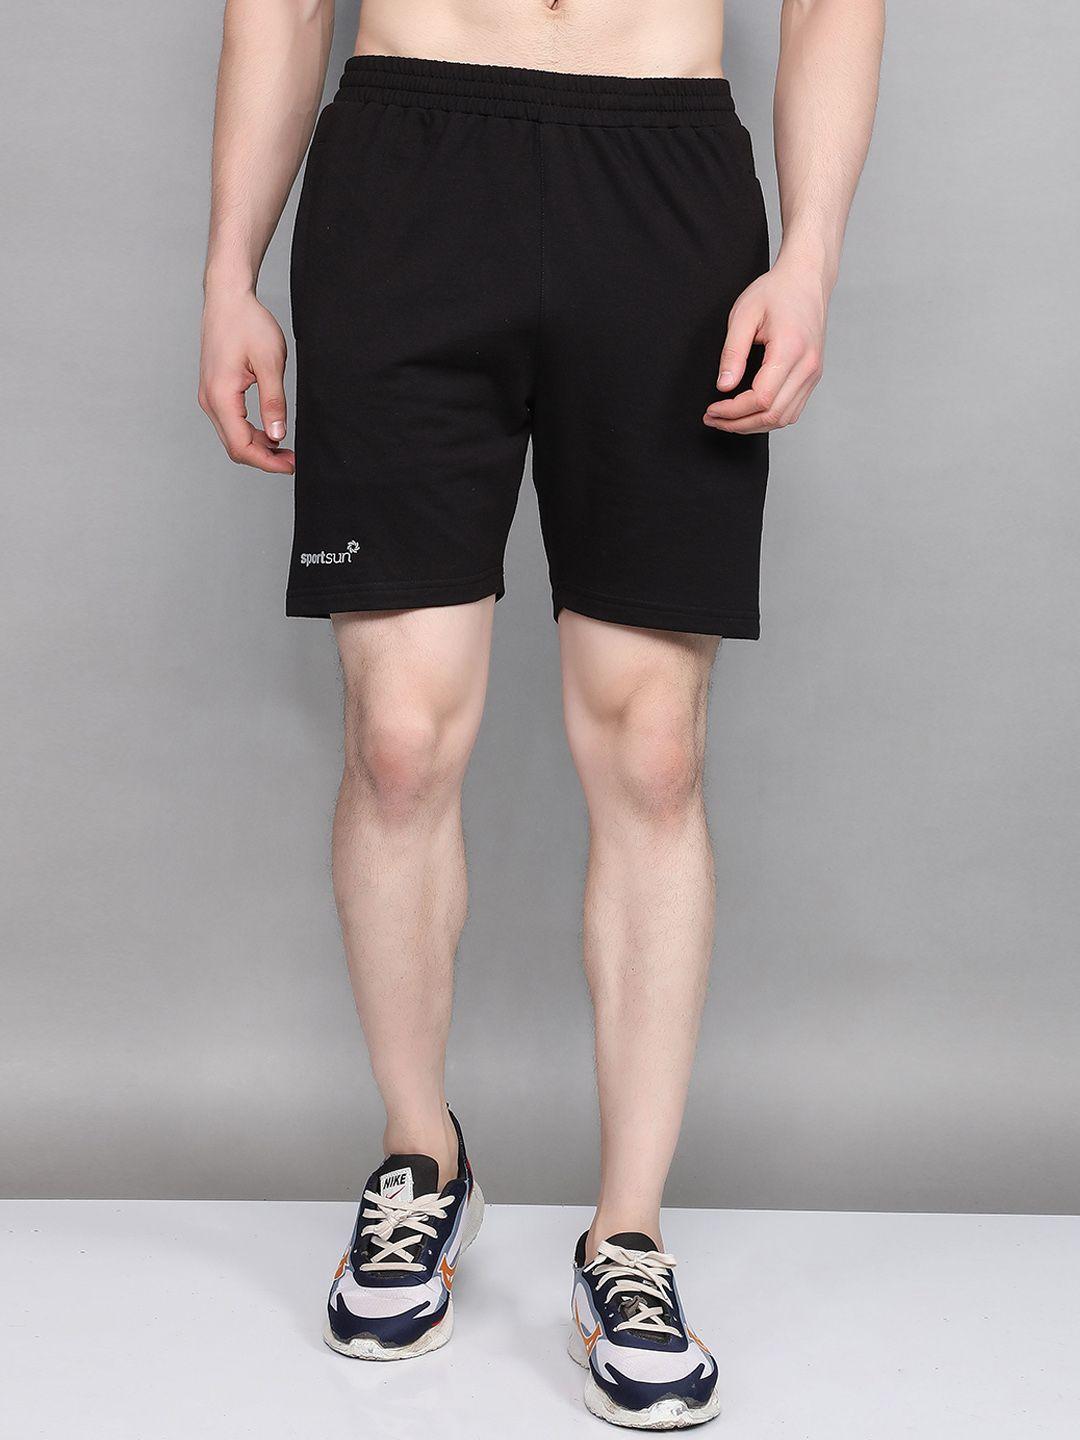 sport sun men outdoor shorts